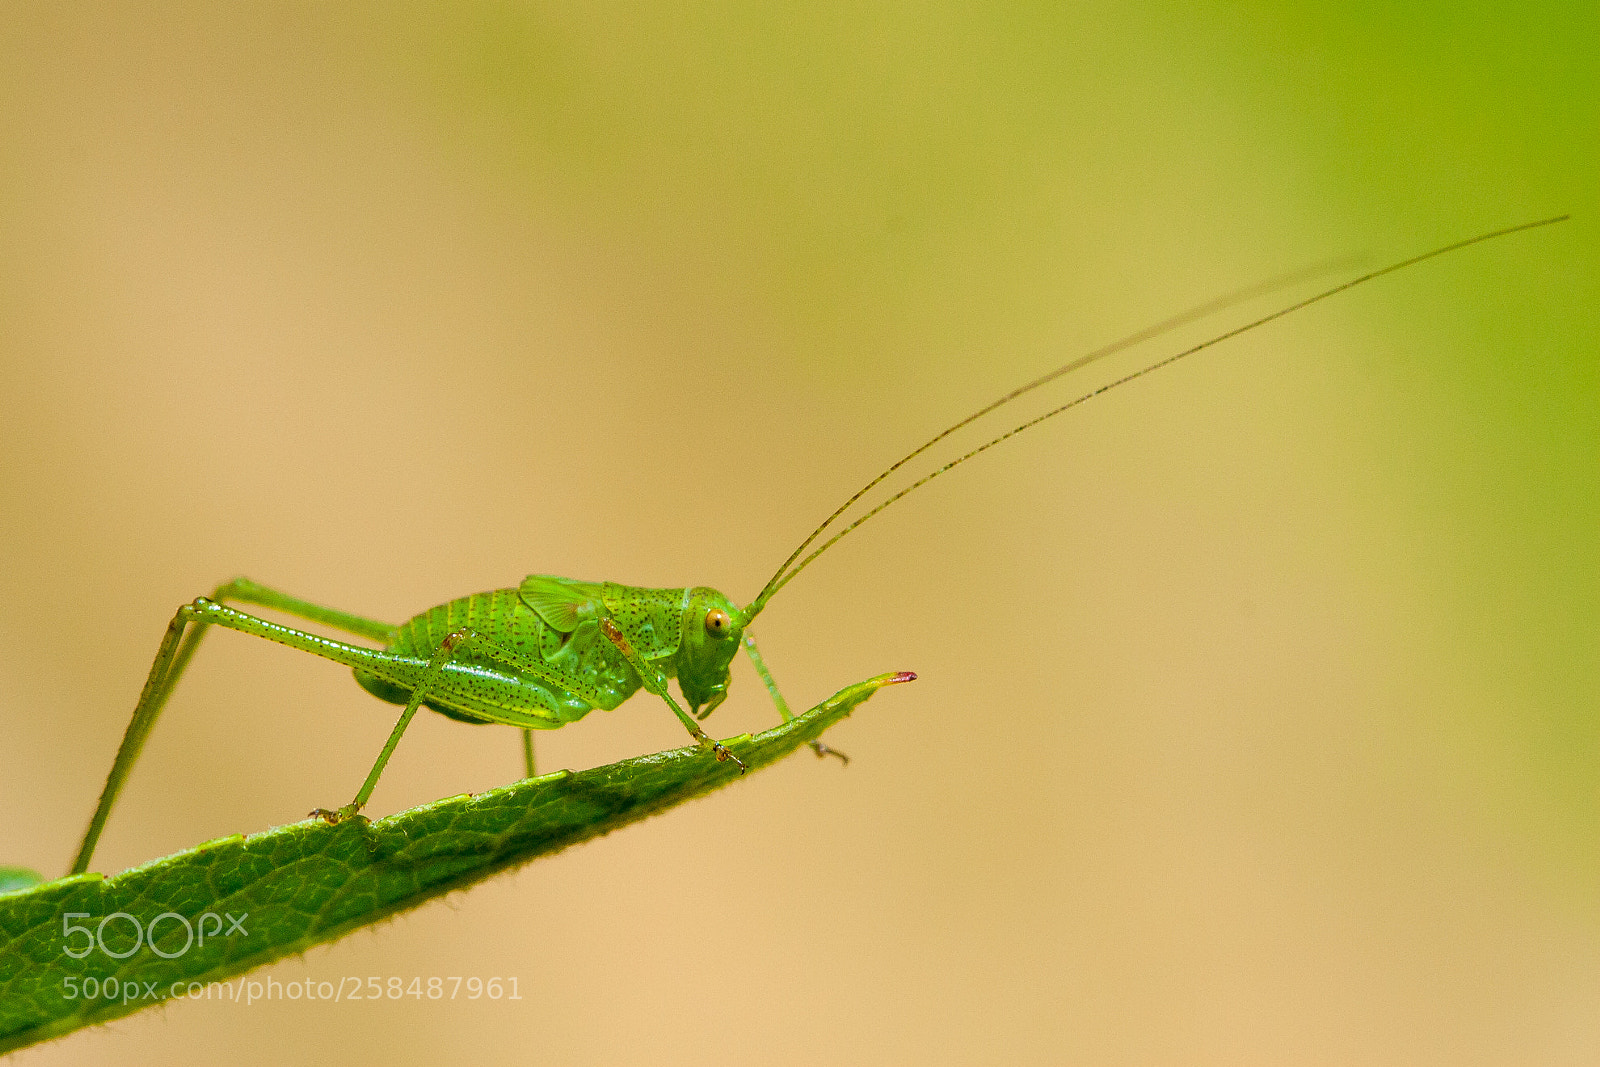 Canon EOS 30D sample photo. Juvenile grasshopper photography